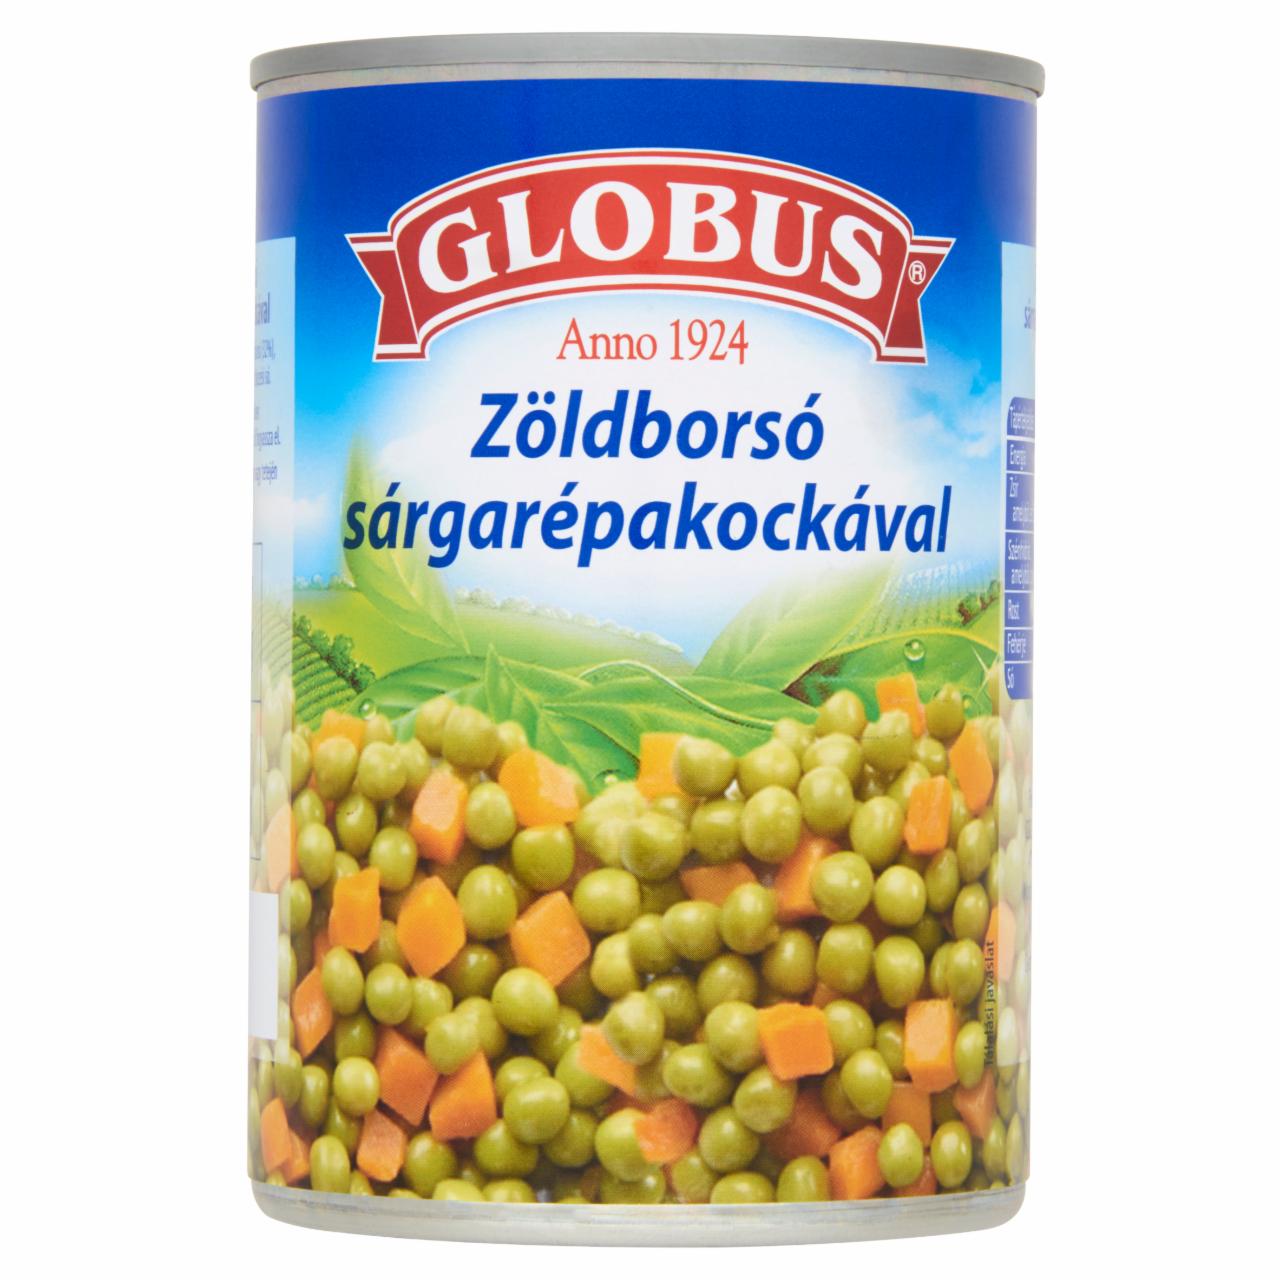 Képek - Globus zöldborsó sárgarépakockával 420 g